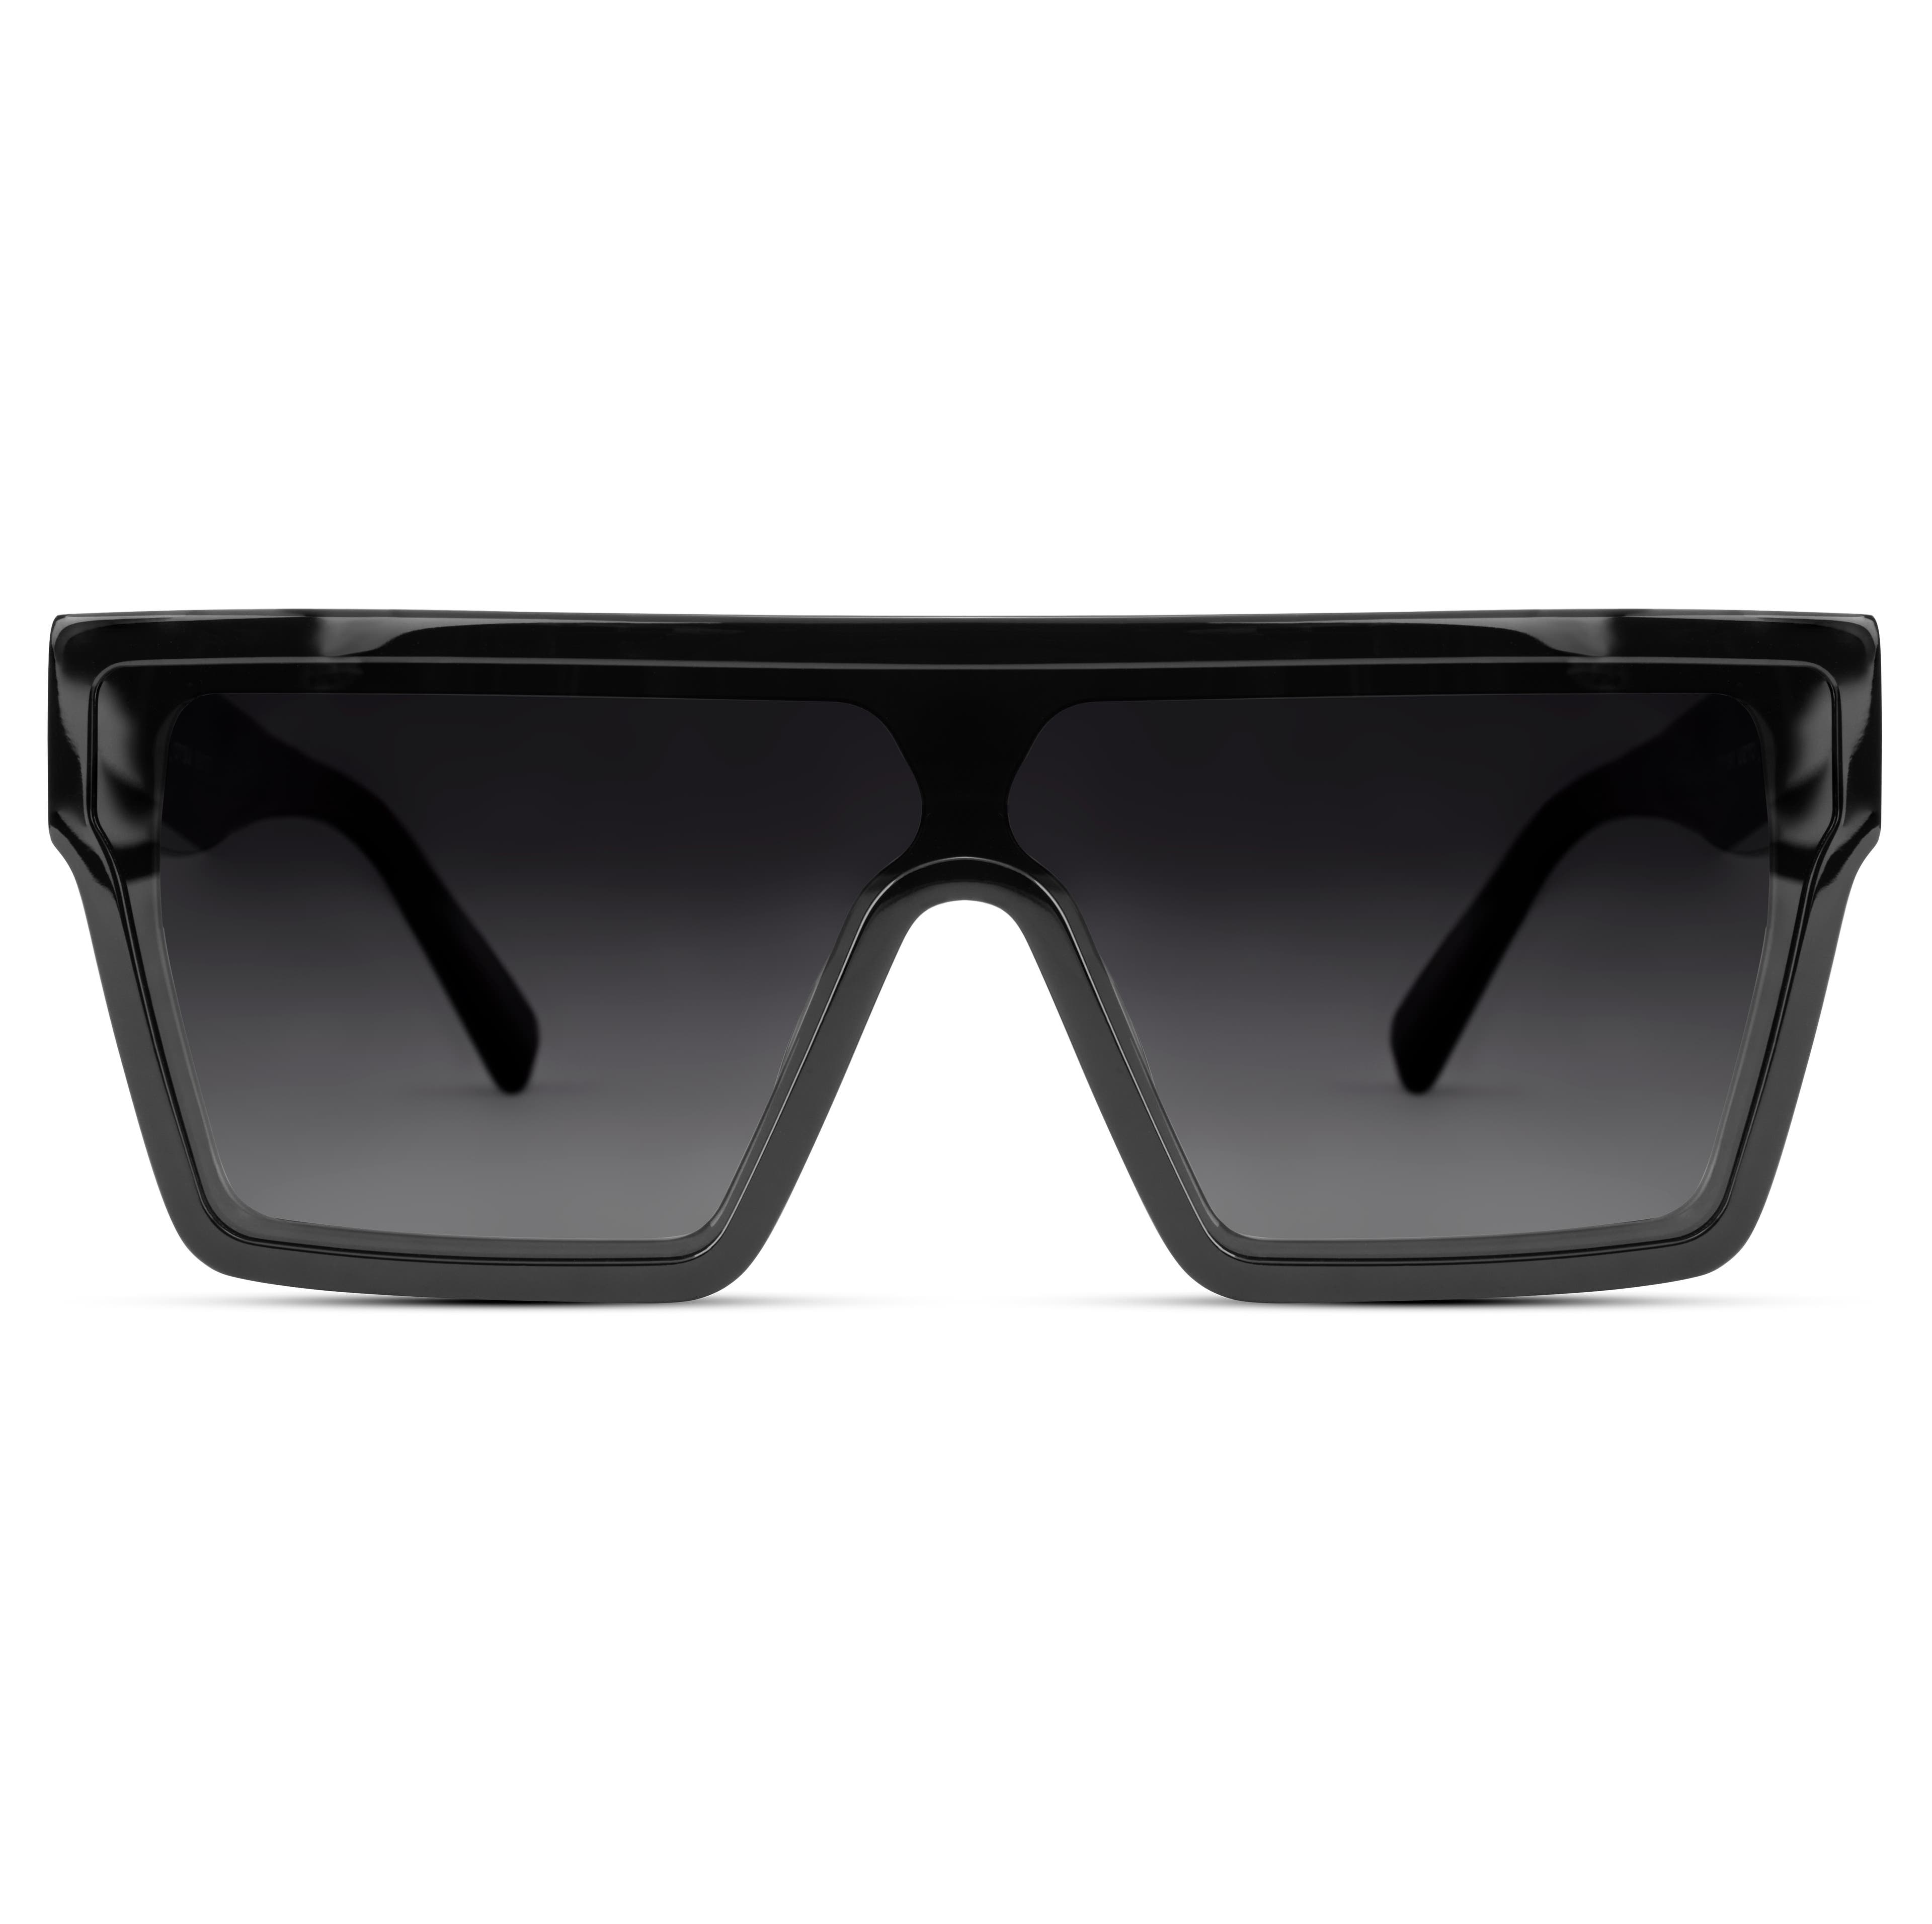 Occasus, Black Retro Squared Polarized Sunglasses, In stock!